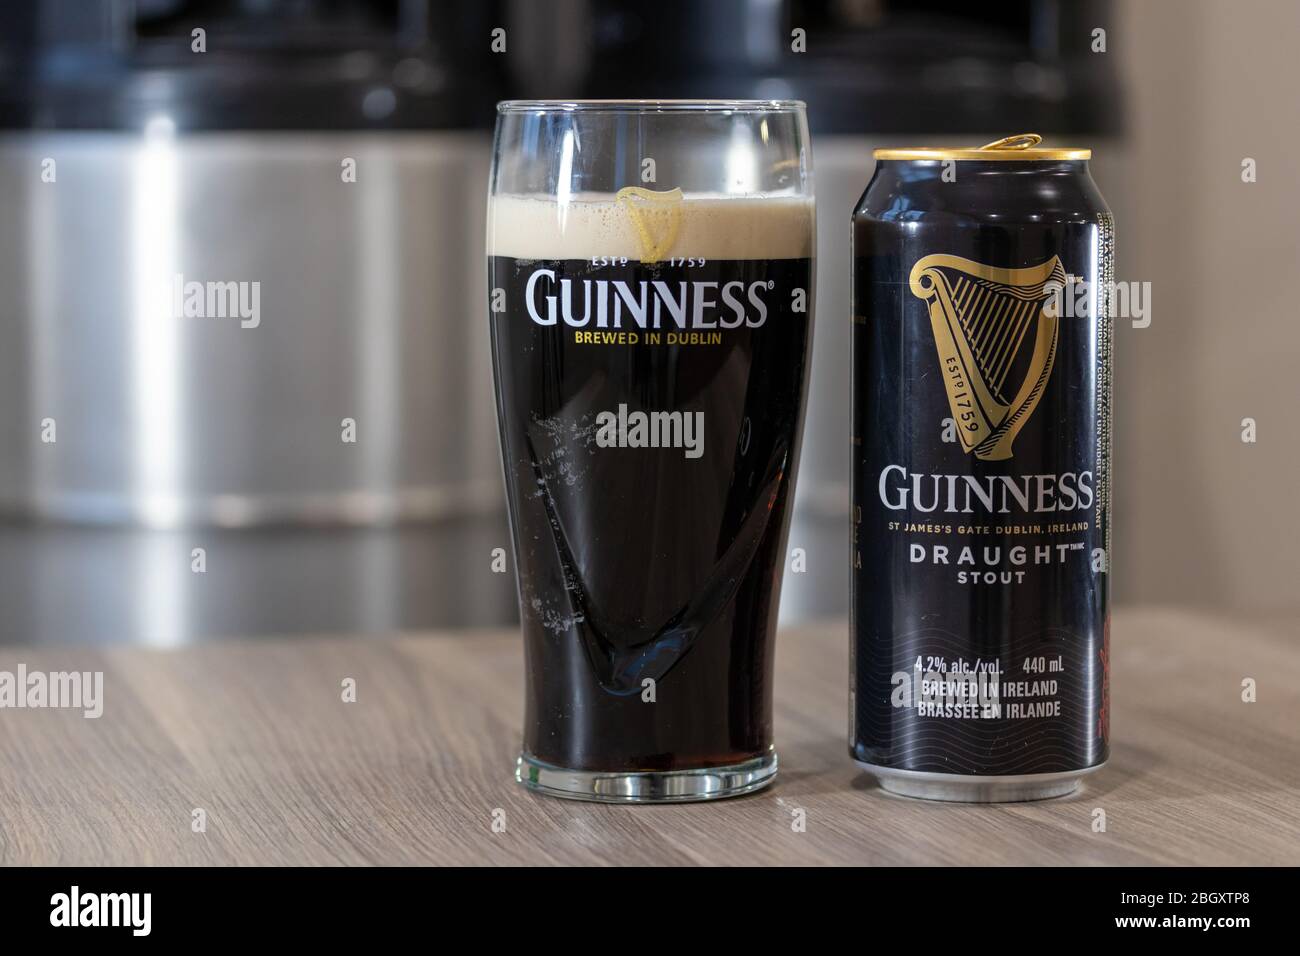 La bière Guinness draft Shout peut sur une table à côté d'un verre de bière dans un verre Guinness avec des kegs empilés en arrière-plan. Banque D'Images